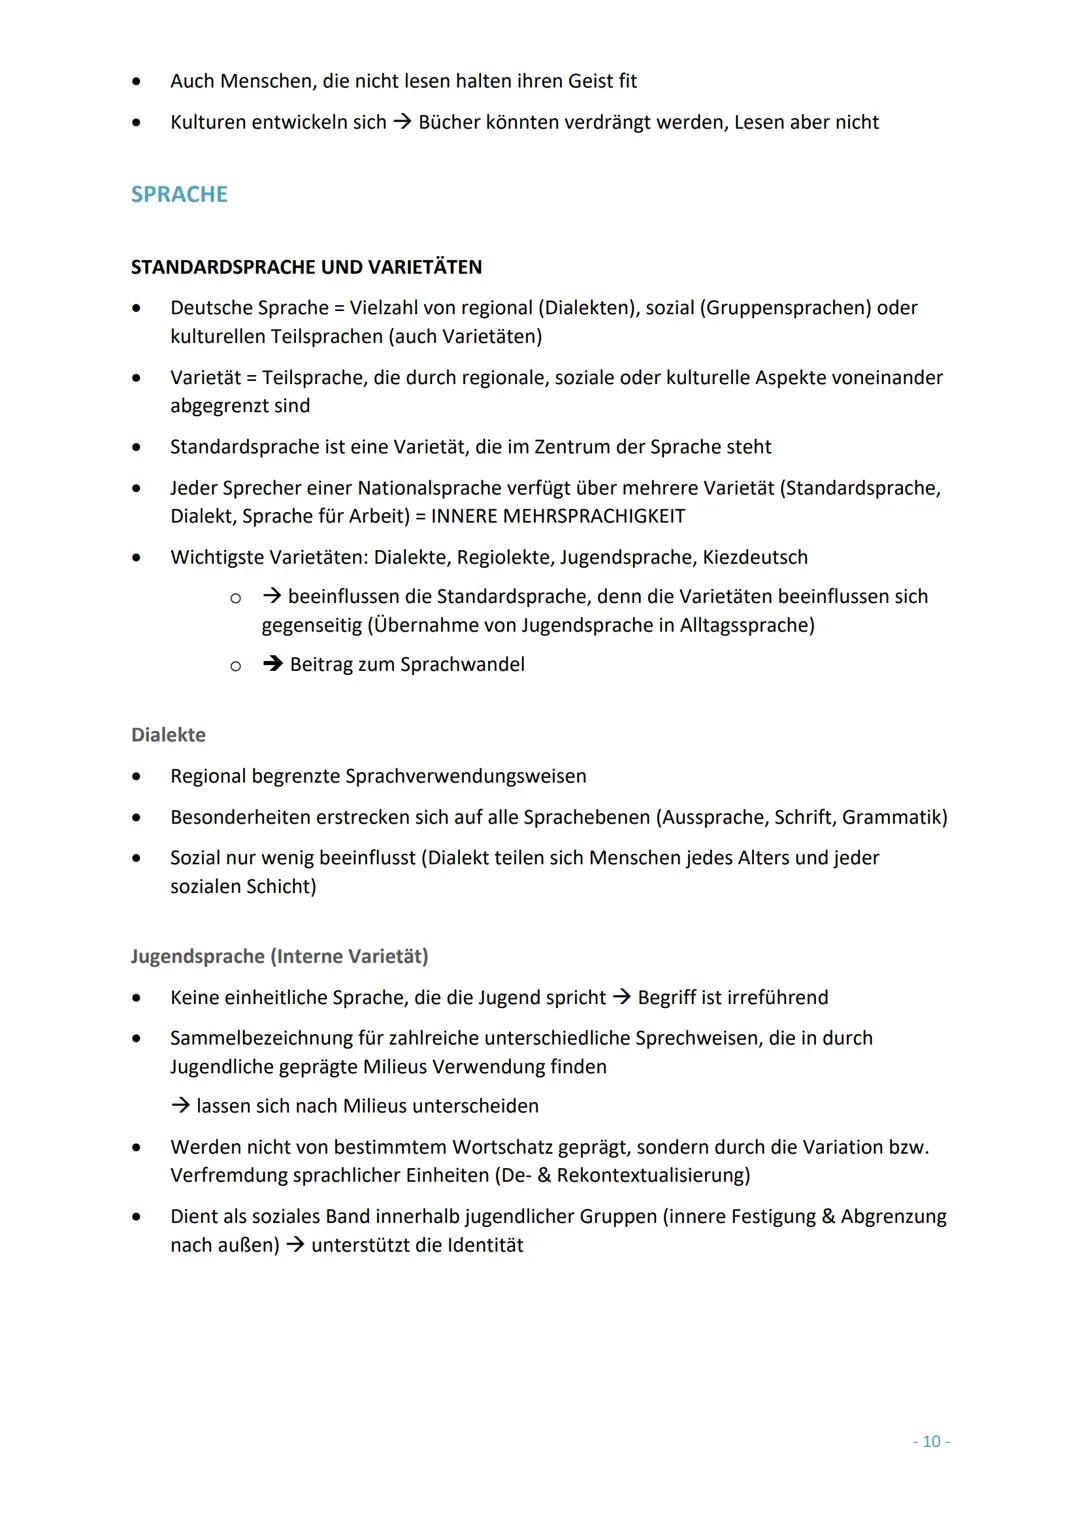 Abitur T4: Sprache, Medien, Lesen
MEDIEN.
DEFINITION..
FUNKTIONEN.
GESCHICHTE & MEDIENWANDEL
1. Kommunikationsrevolution.
2. Kommunikationsr